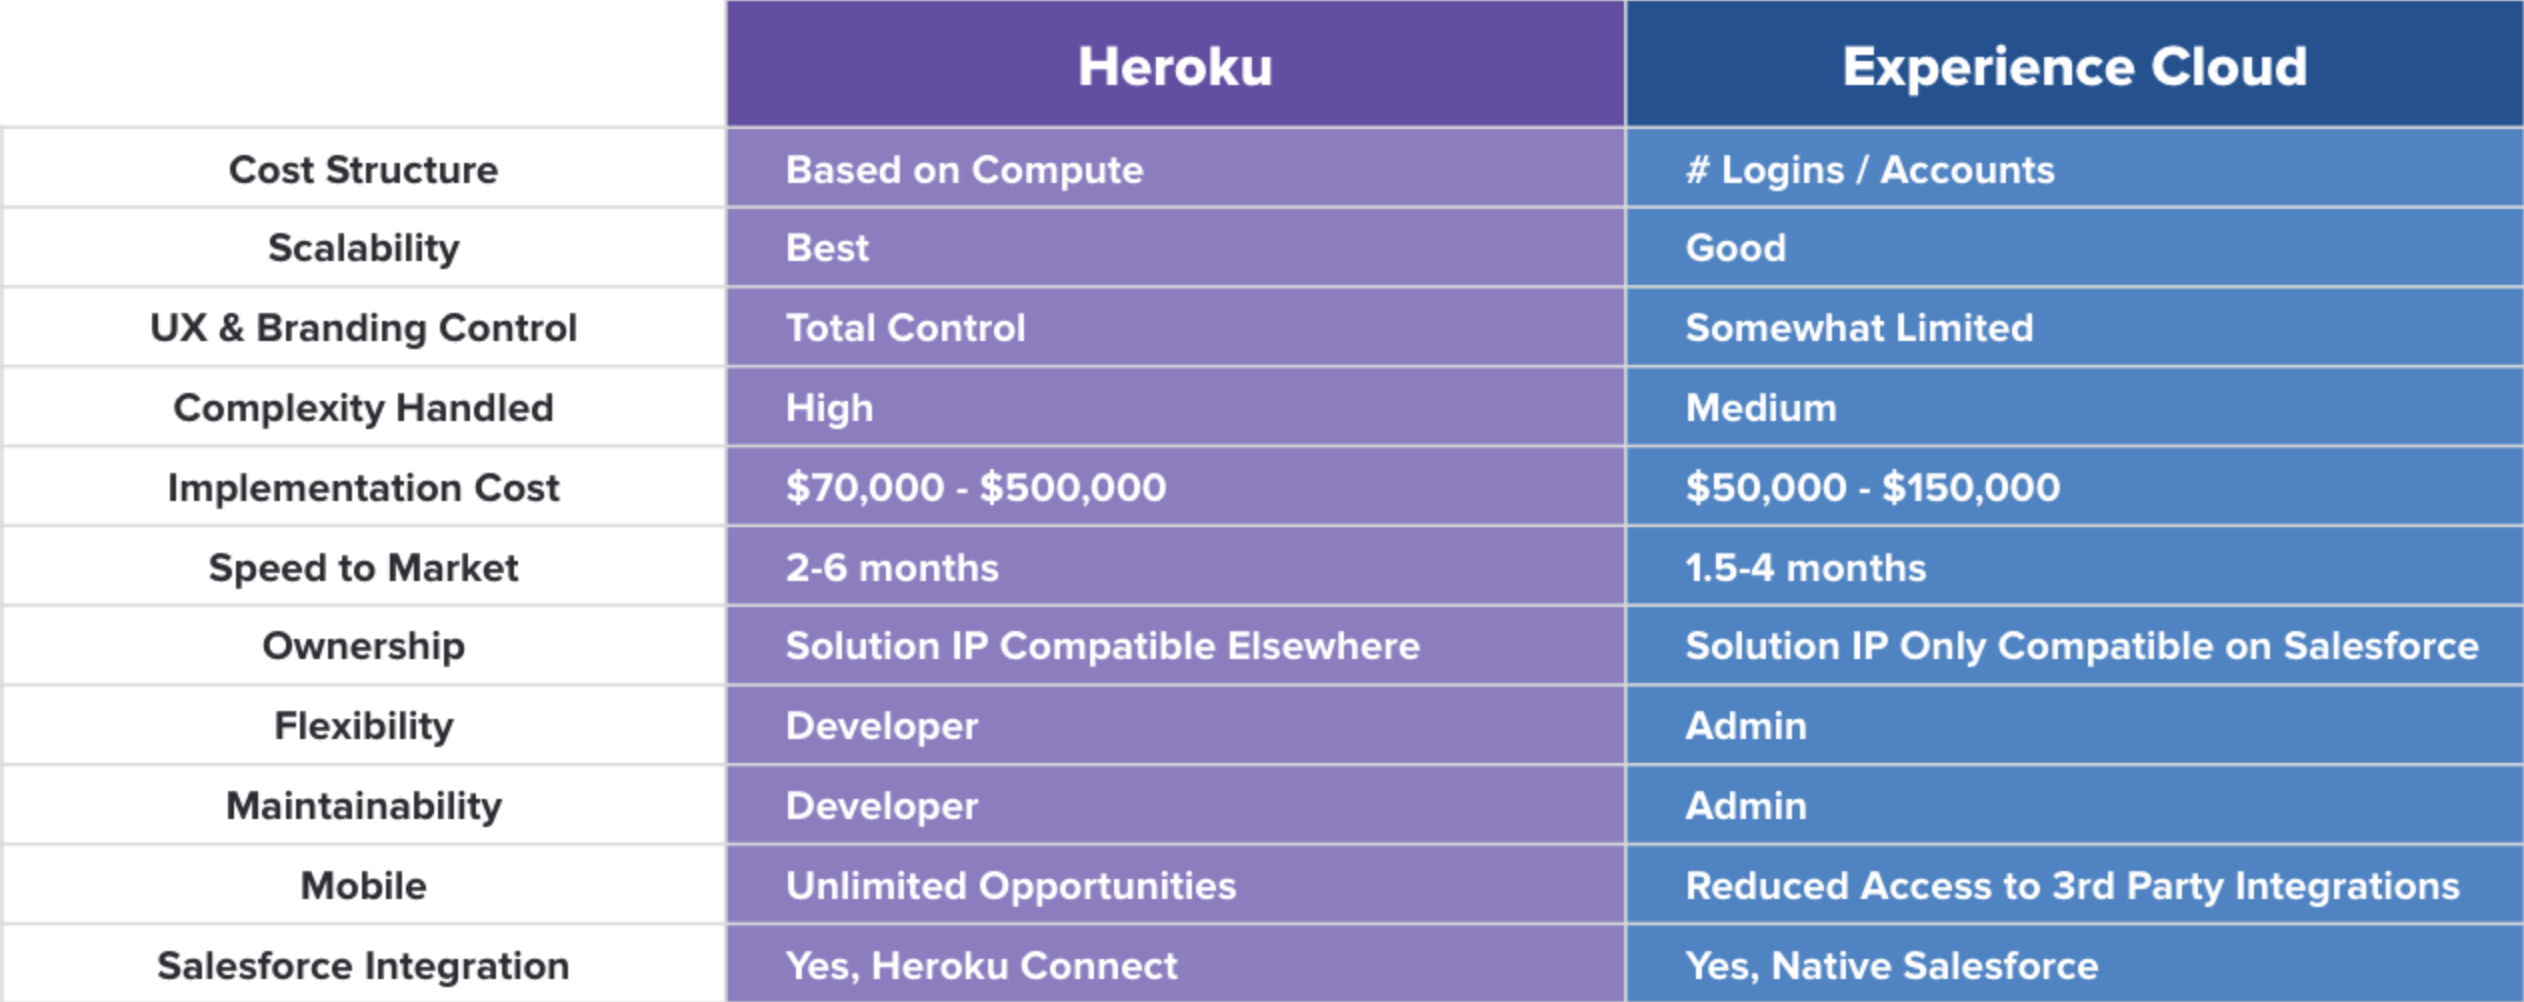 Heroku vs Experience Cloud